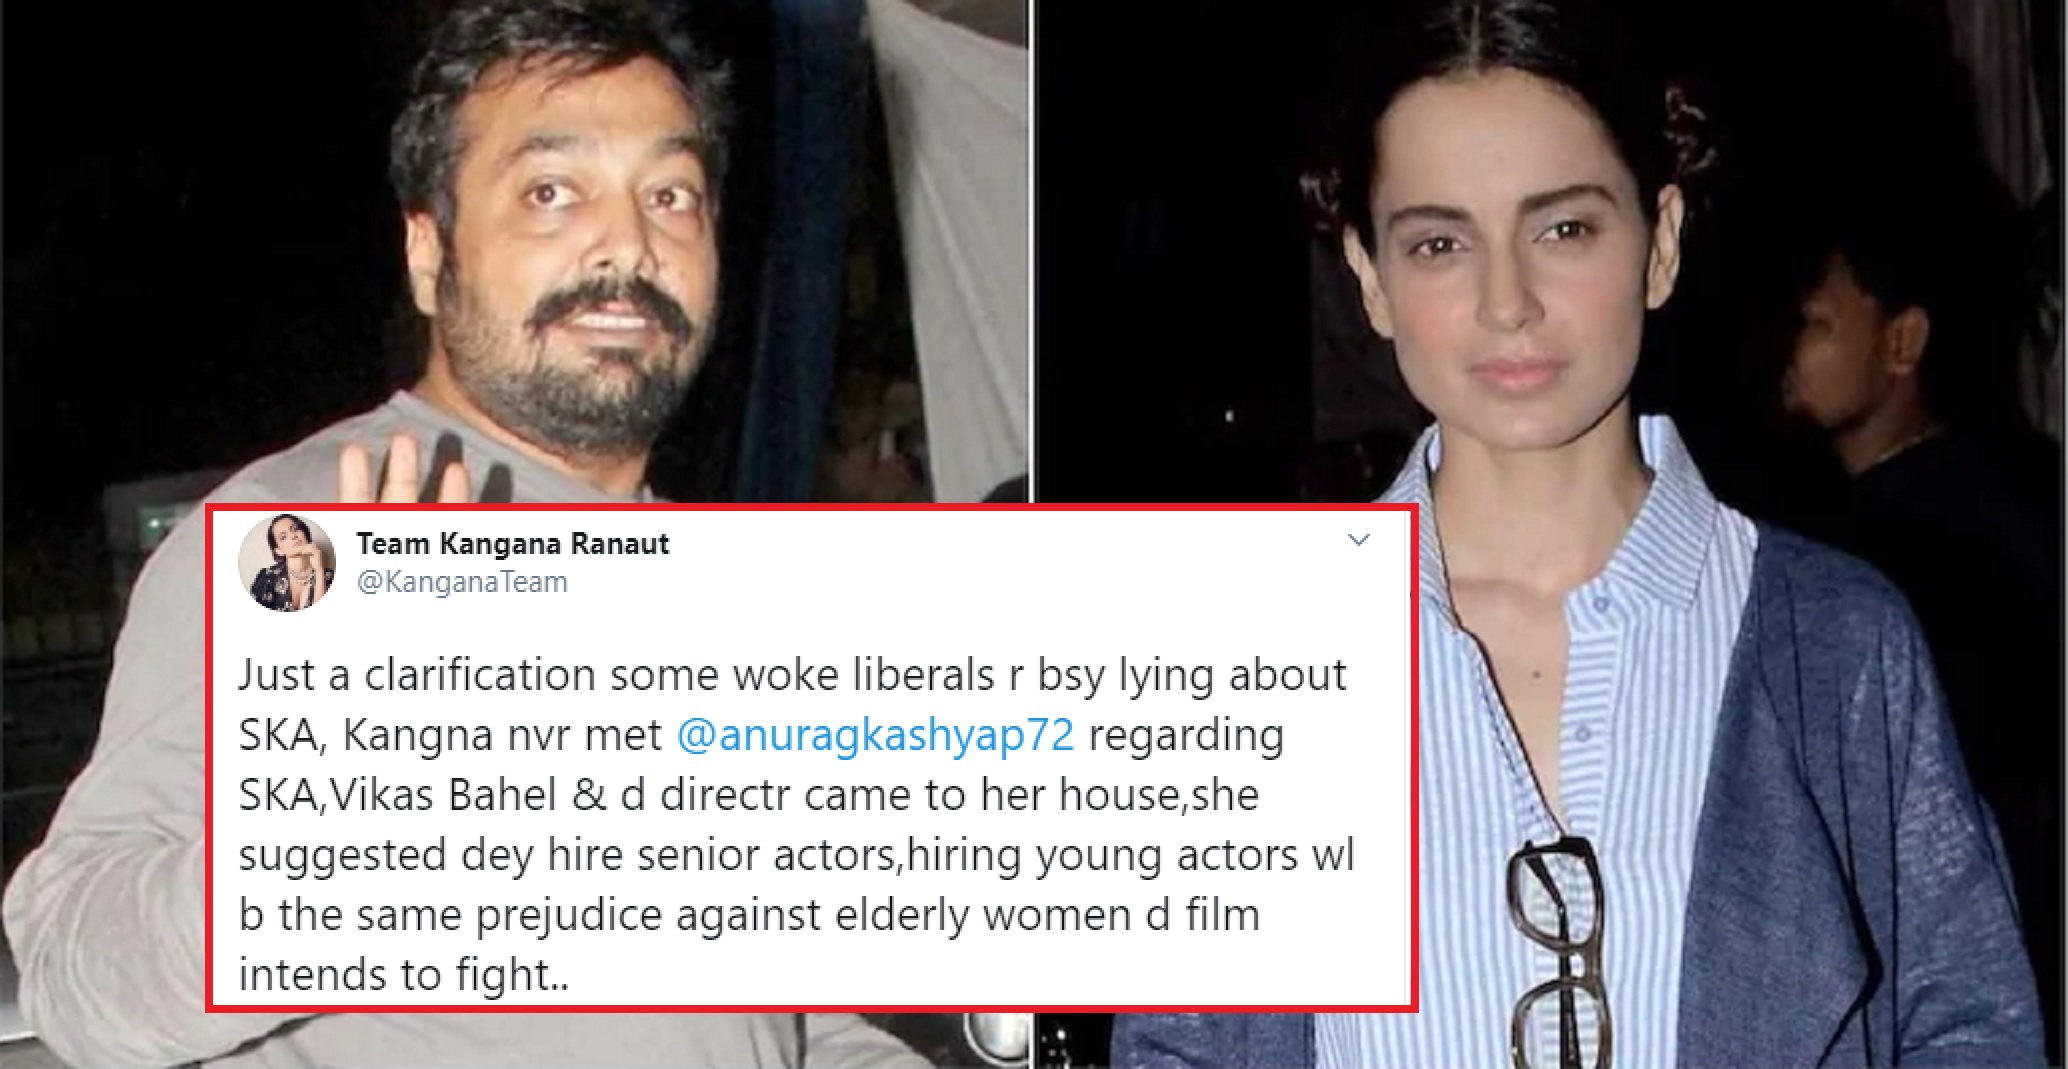 Anurag Kashyap Spreading Lies About Kangana Ranaut Regarding Saand Ki Aankh, Says the Actress’ Team